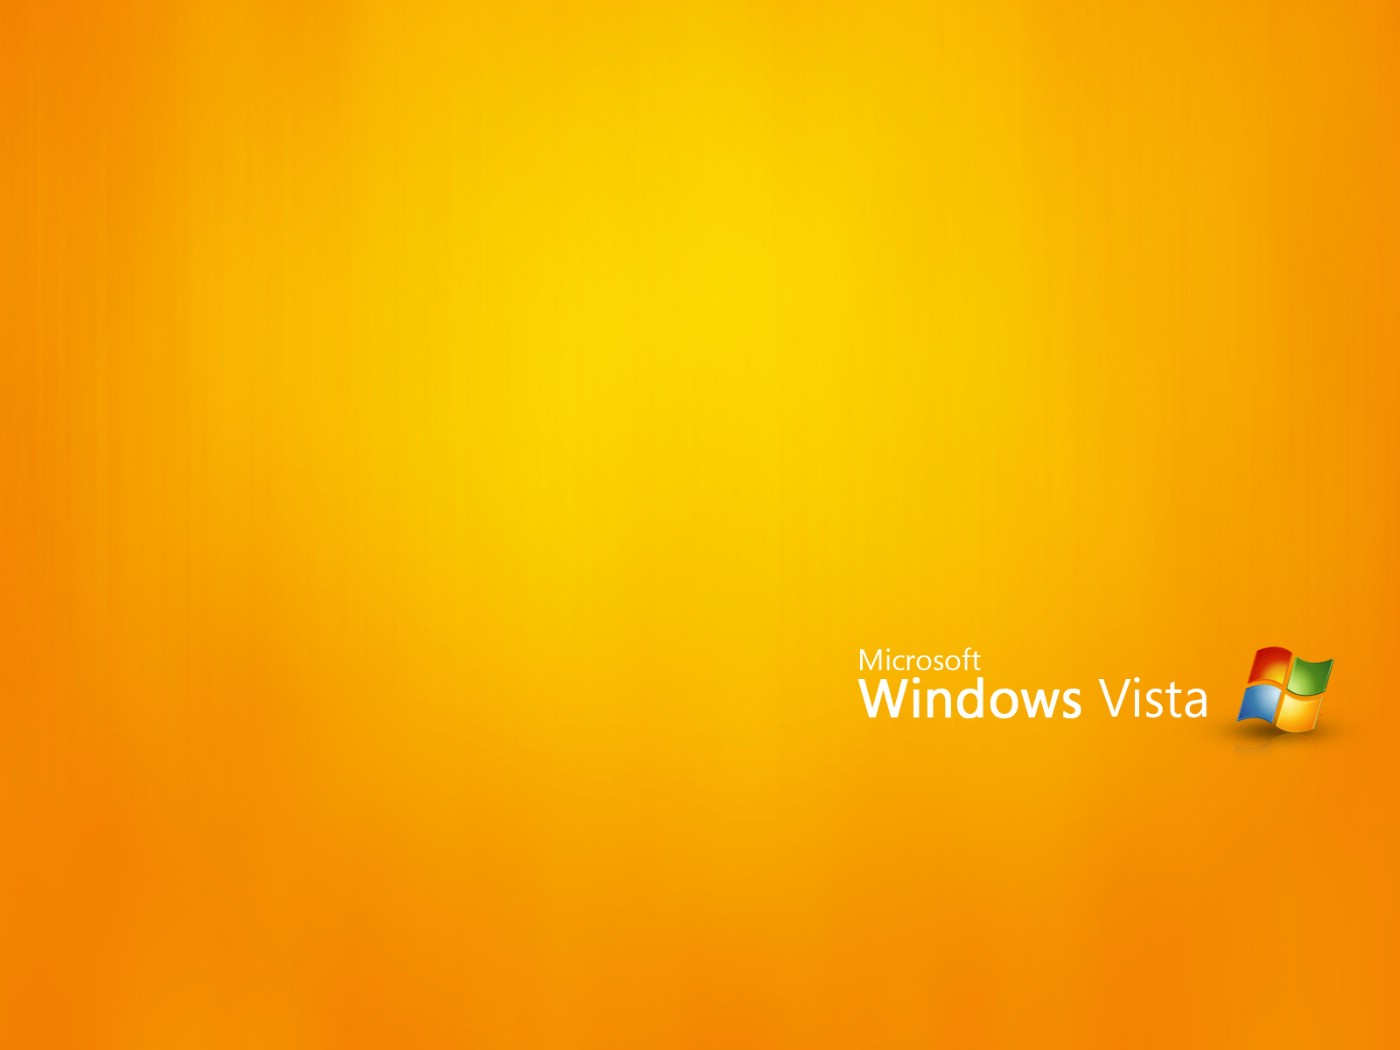 壁纸1400x1050Vista主题 3 16壁纸 Vista主题壁纸 Vista主题图片 Vista主题素材 系统壁纸 系统图库 系统图片素材桌面壁纸